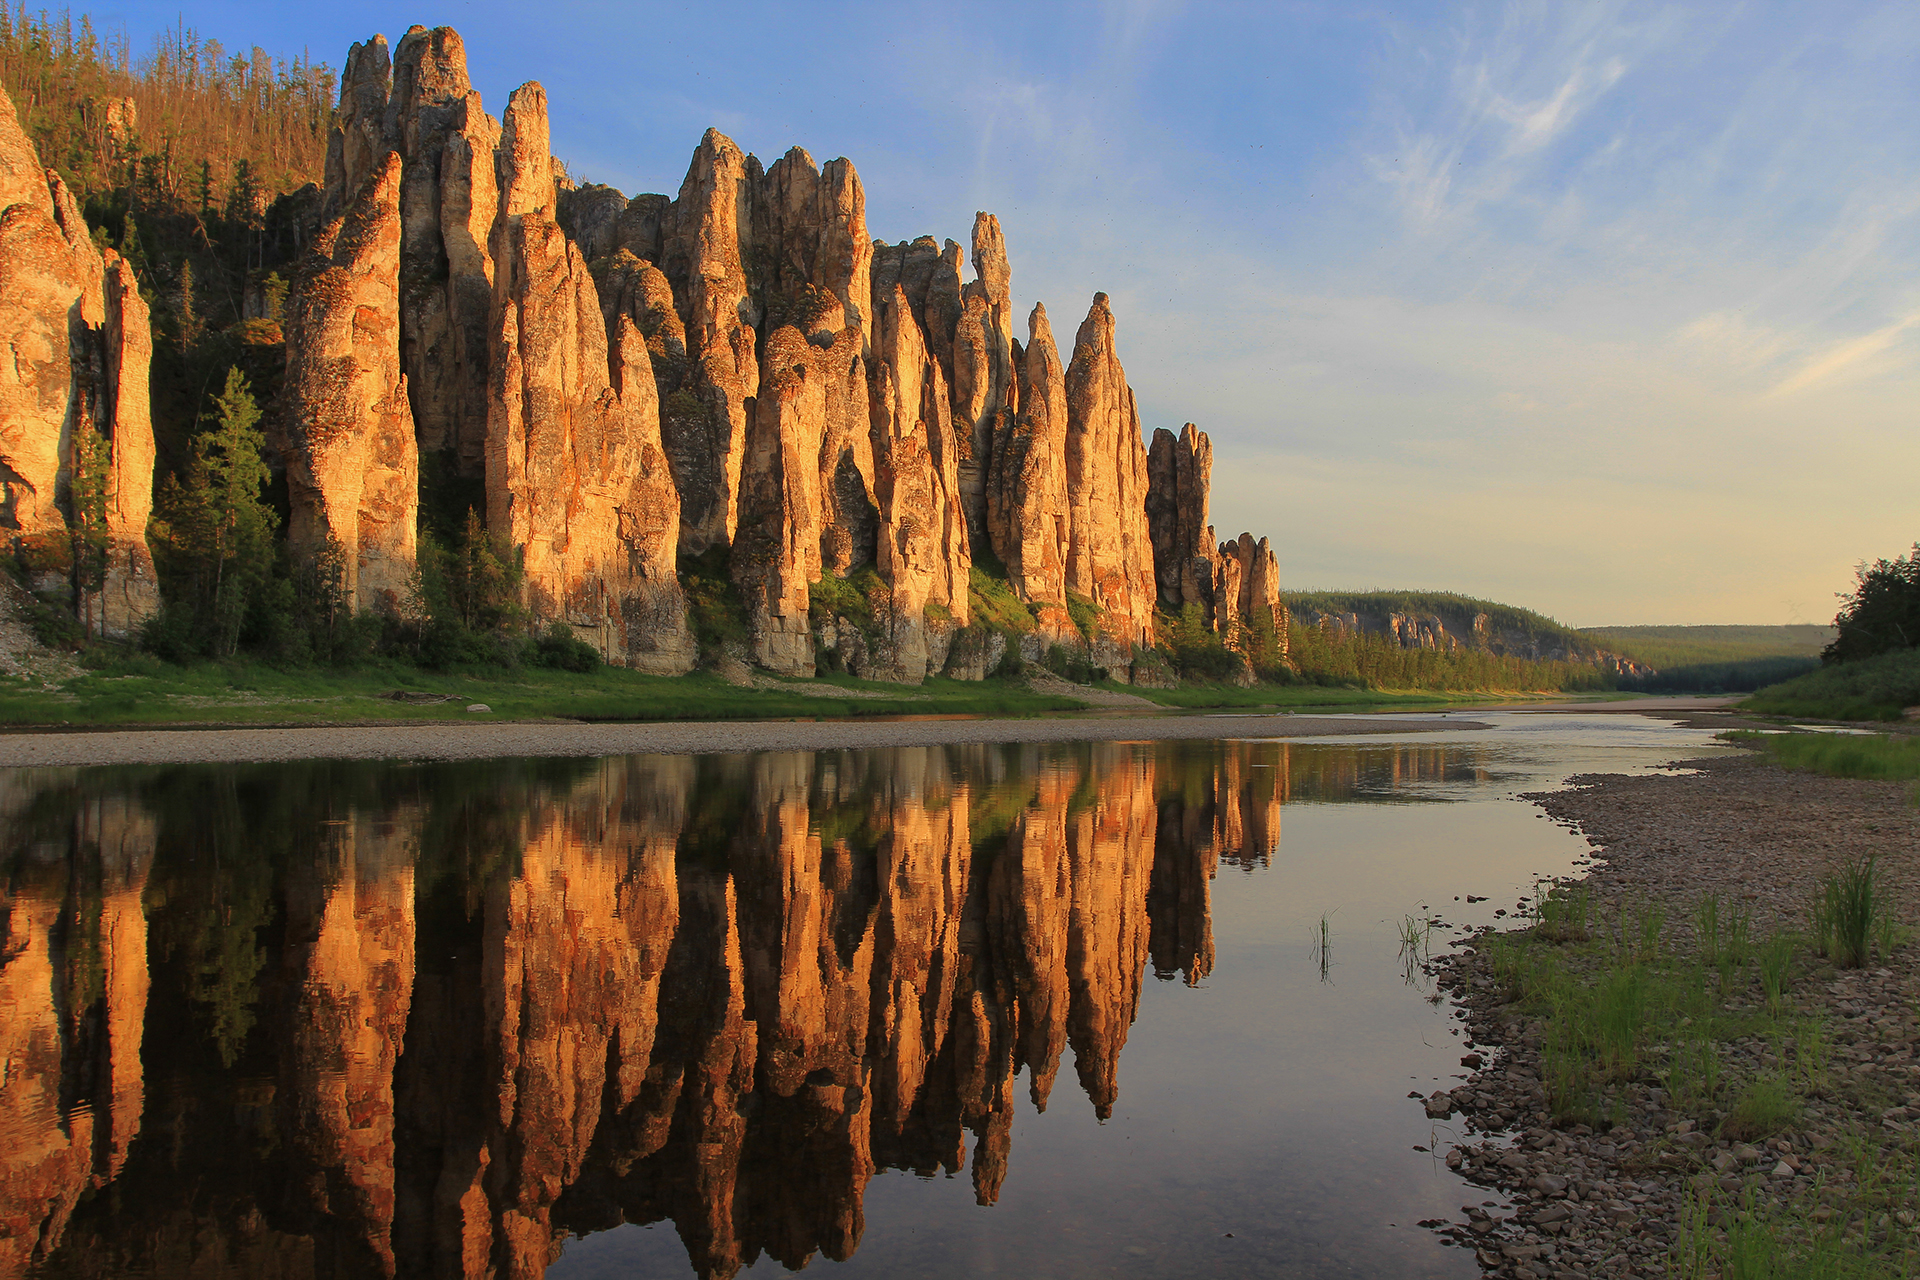 5 природных памятников россии